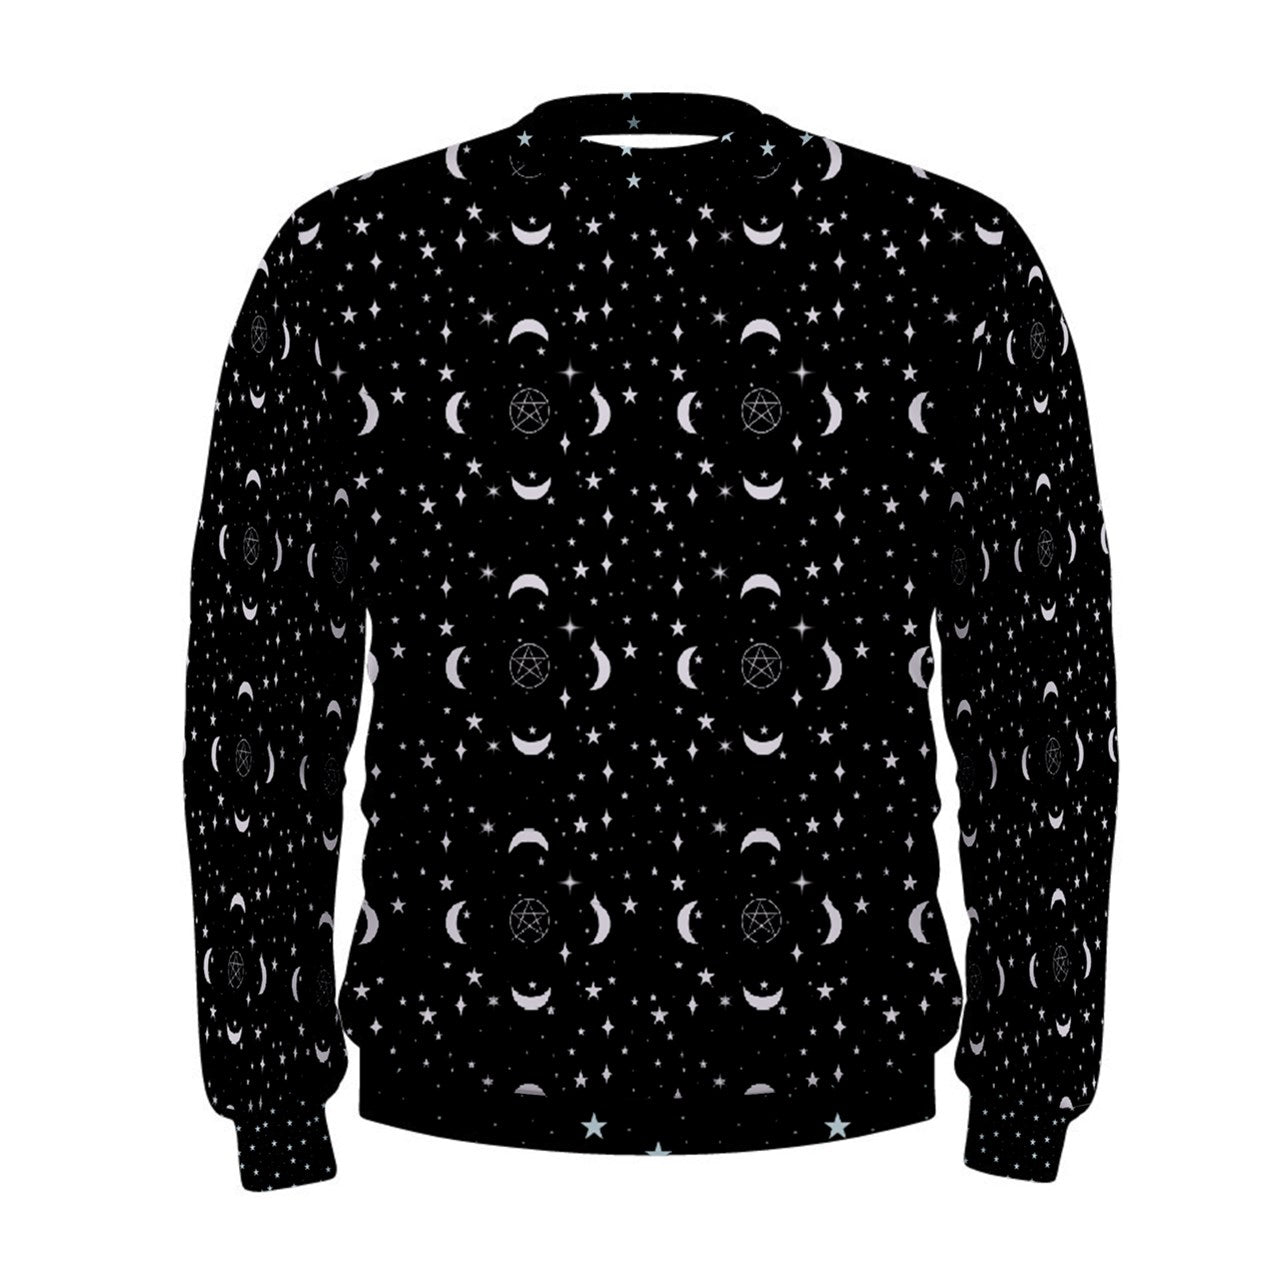 Crescent Pentacle Sweatshirt